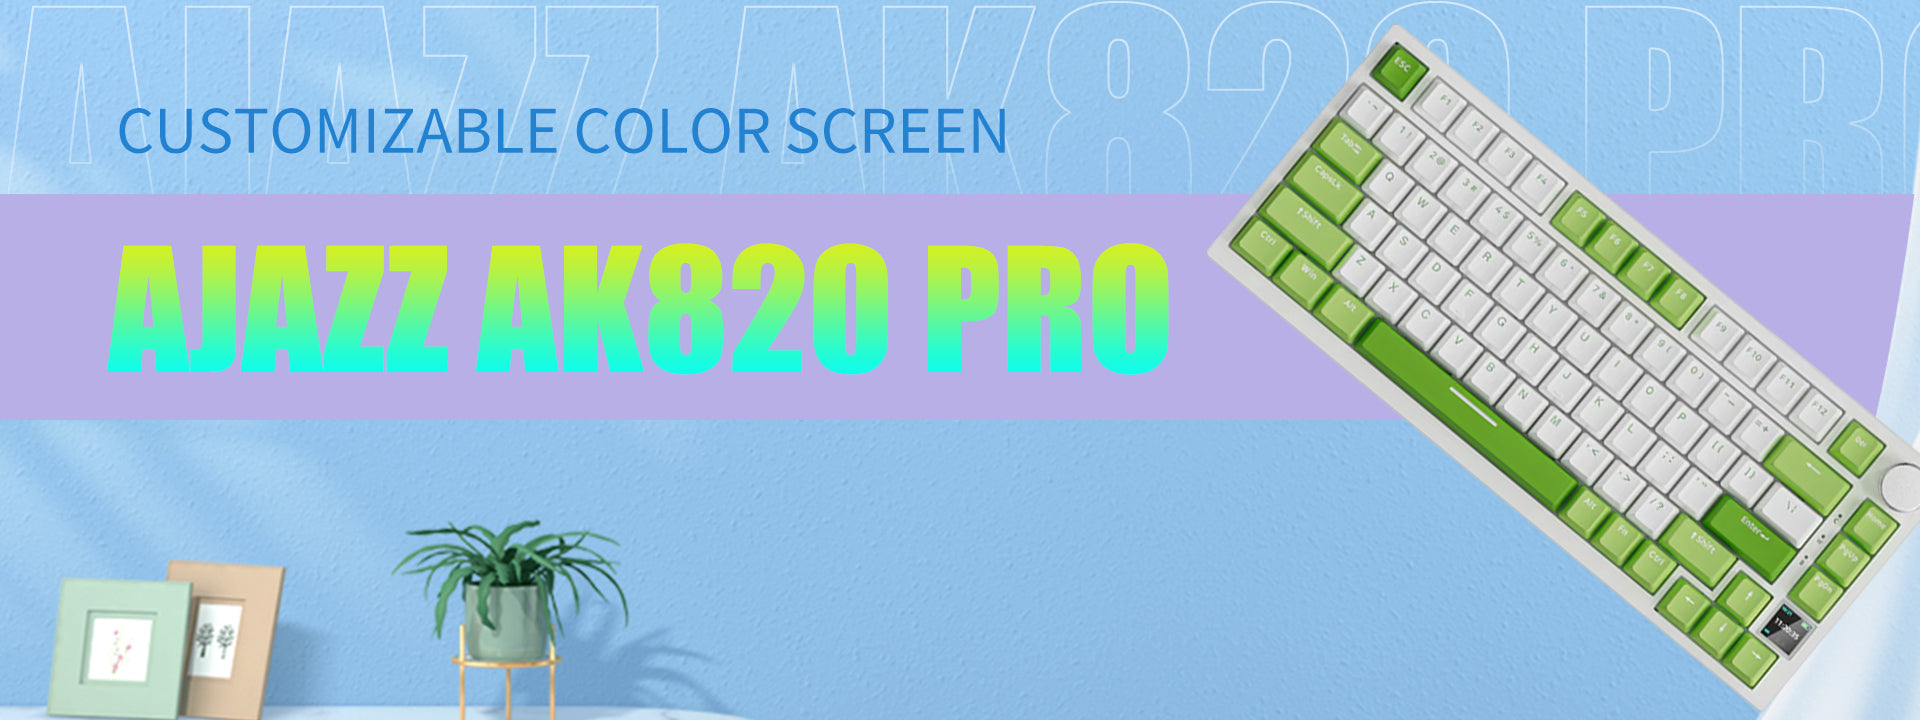 Ajazz AK820 Pro Keyboards - Tapelf